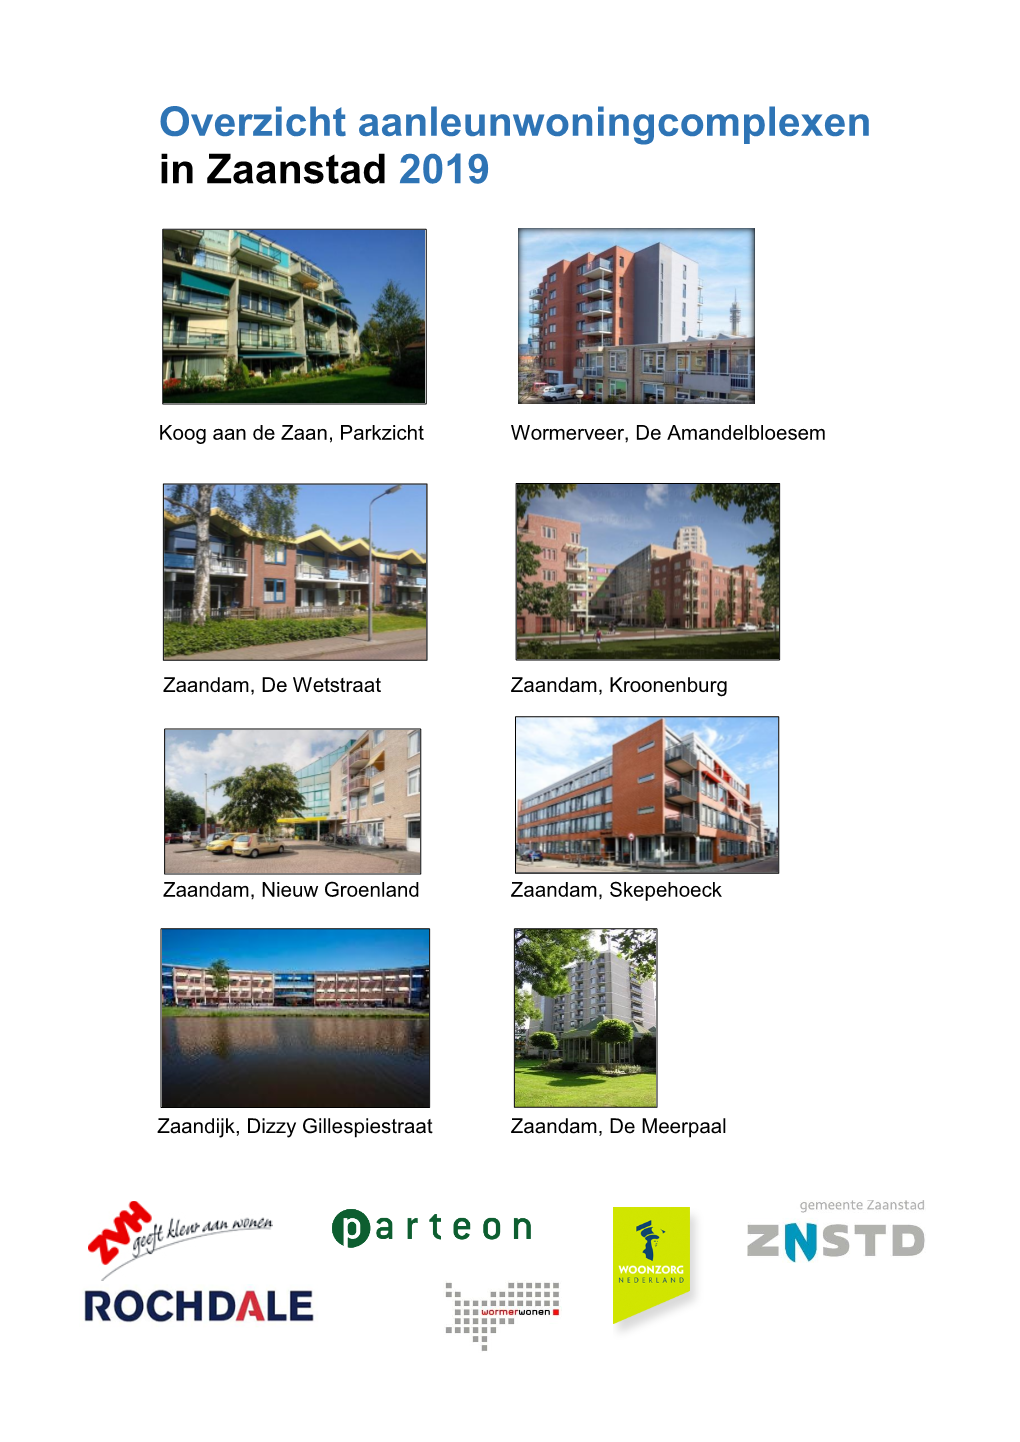 Overzicht Aanleunwoningcomplexen in Zaanstad 2019